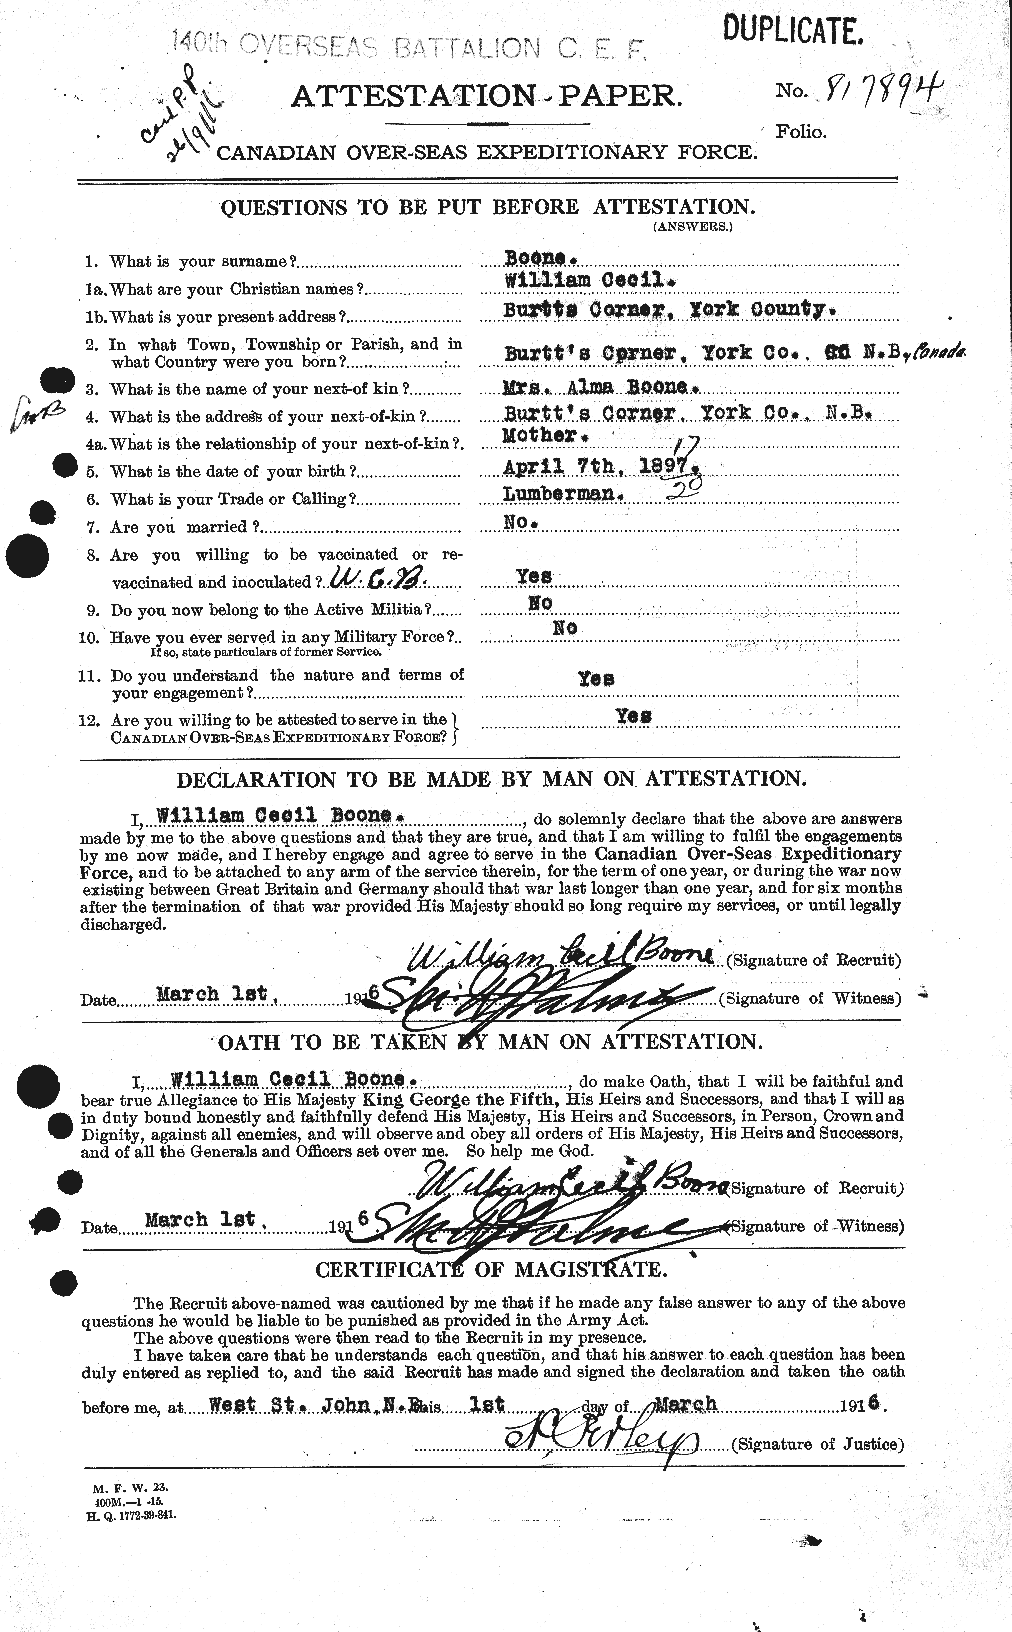 Dossiers du Personnel de la Première Guerre mondiale - CEC 251357a